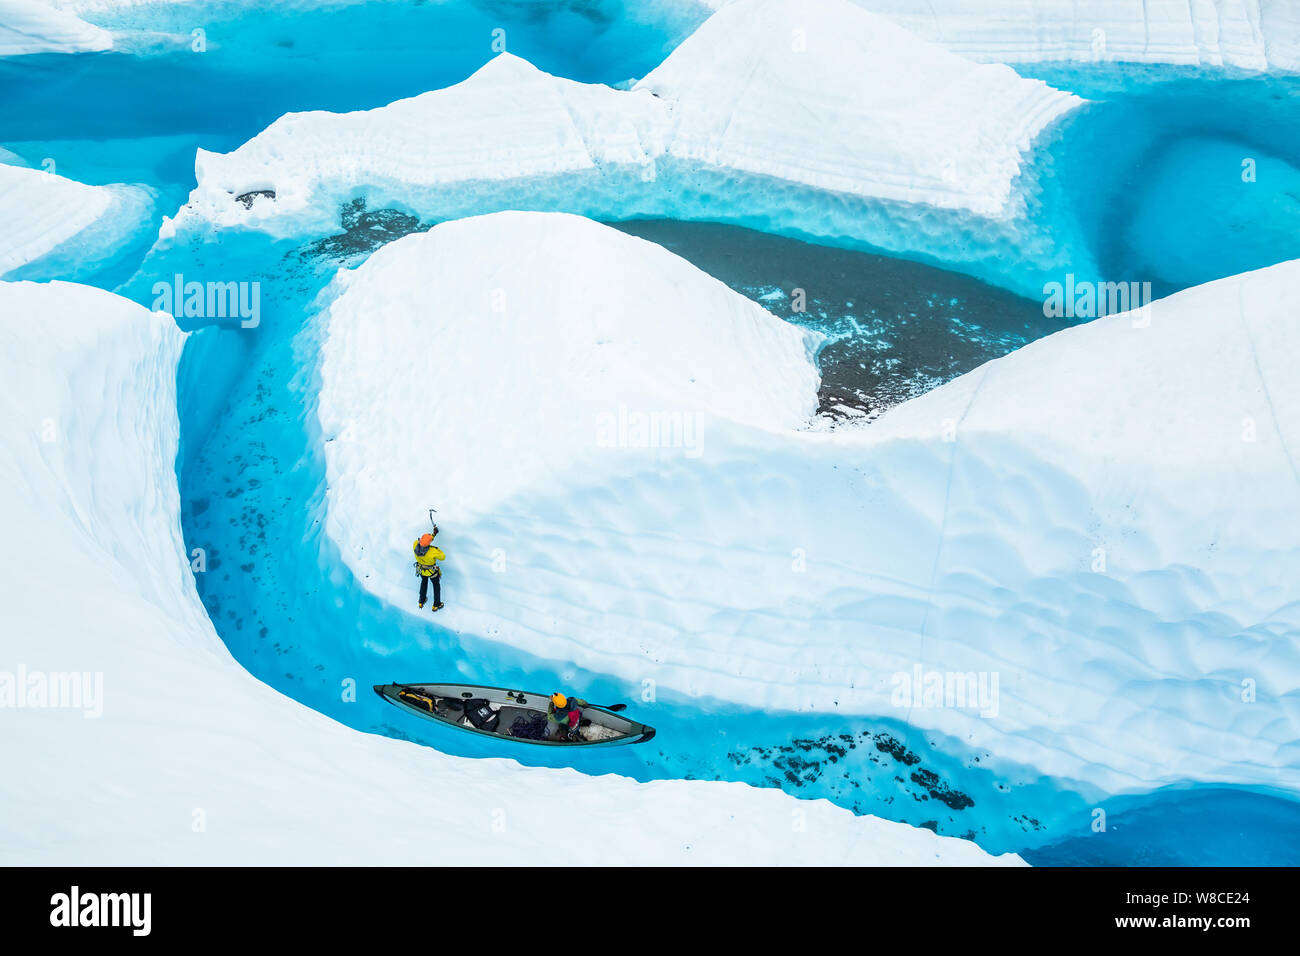 Nach dem Klettern aus einem Kanu in einem grossen blauen Pool auf der Matanuska Gletscher, ein junger Mann, der bis Soli ein fin von Eis aus dem Wasser herausragt. Stockfoto